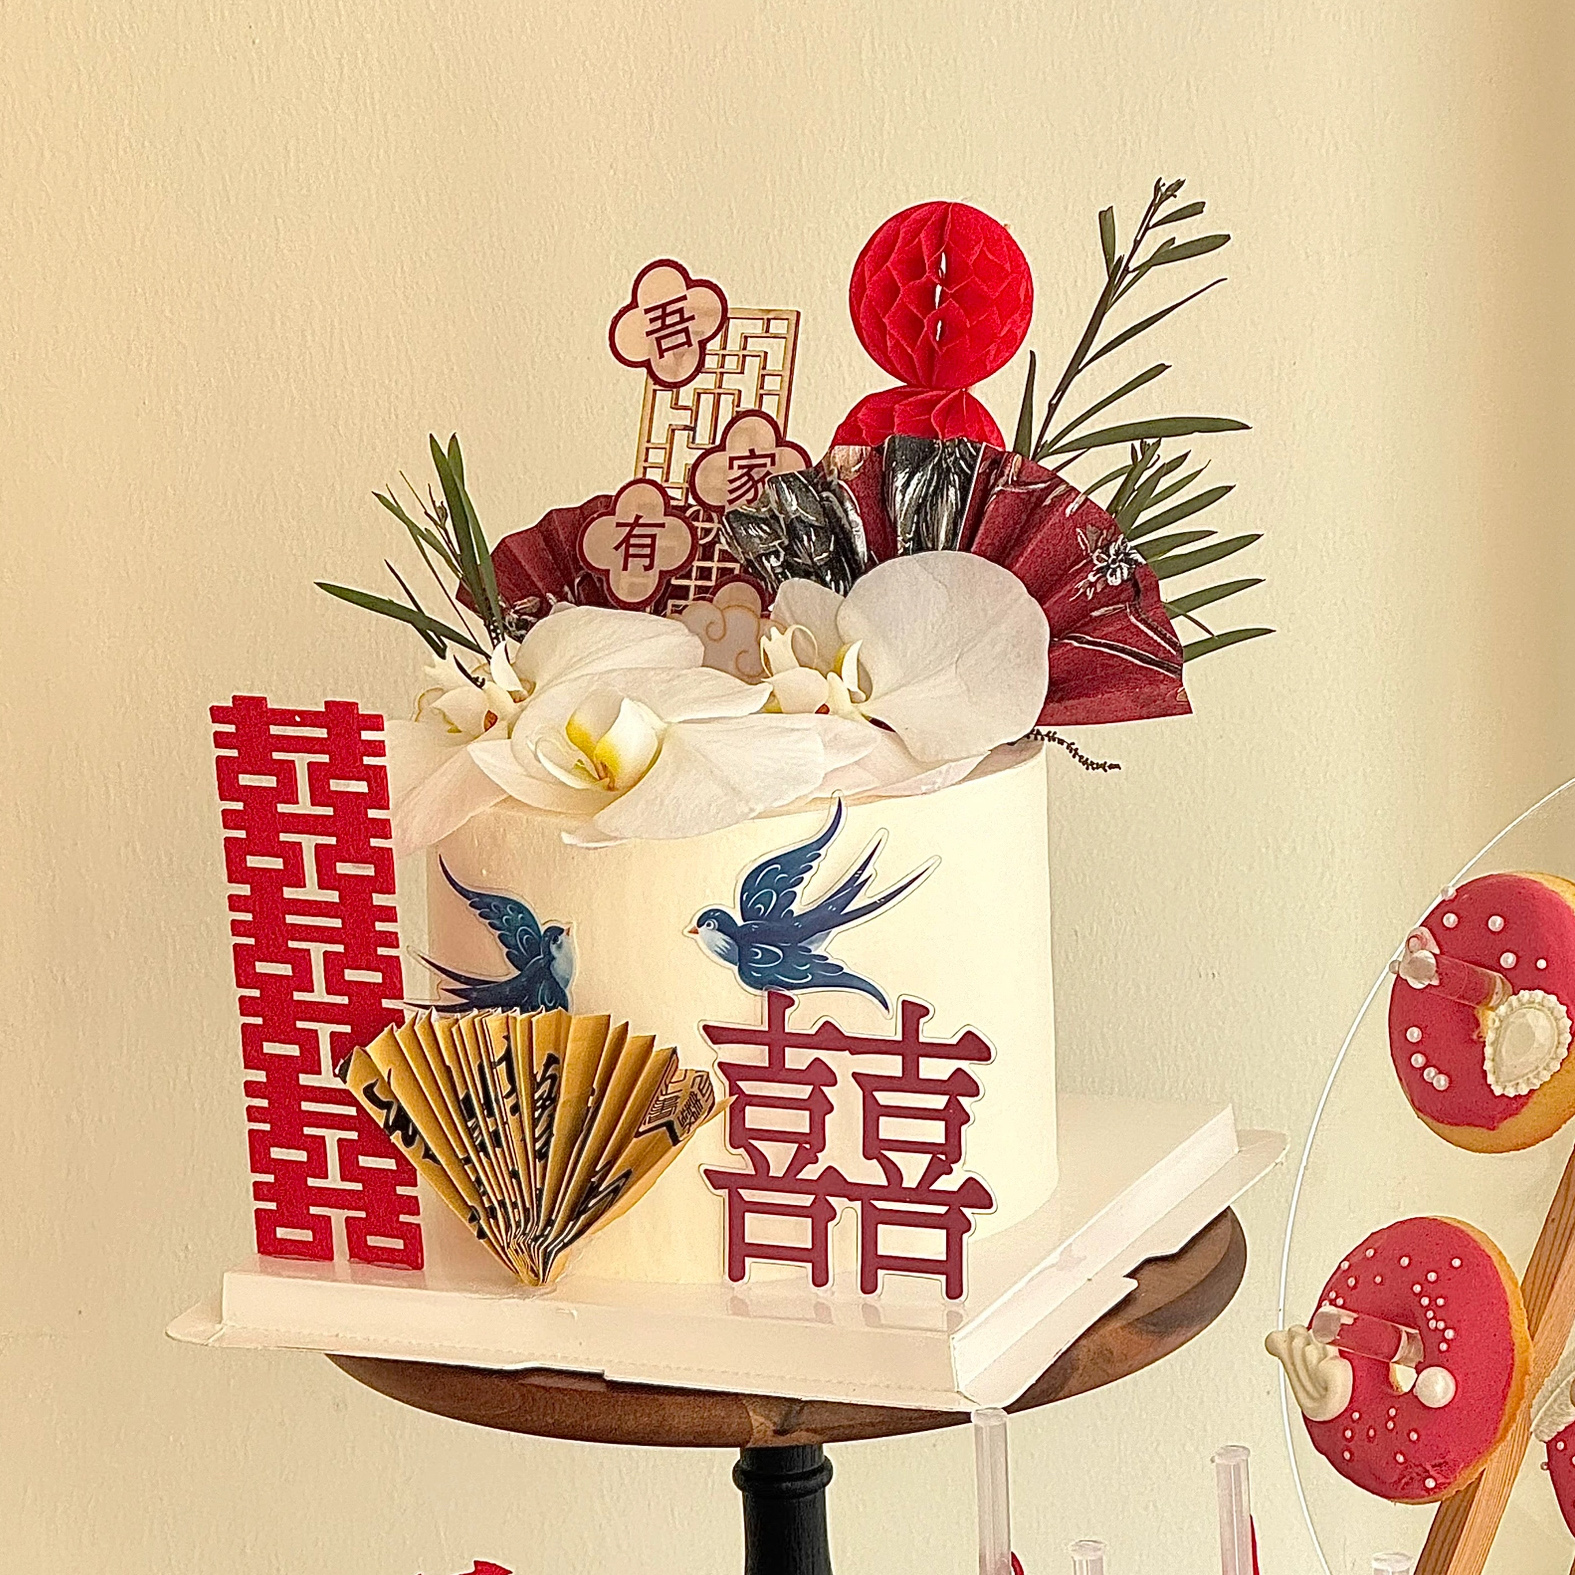 吾家有喜新中式婚礼蛋糕装饰喜字喜鹊结婚订婚快乐甜品台装扮插件